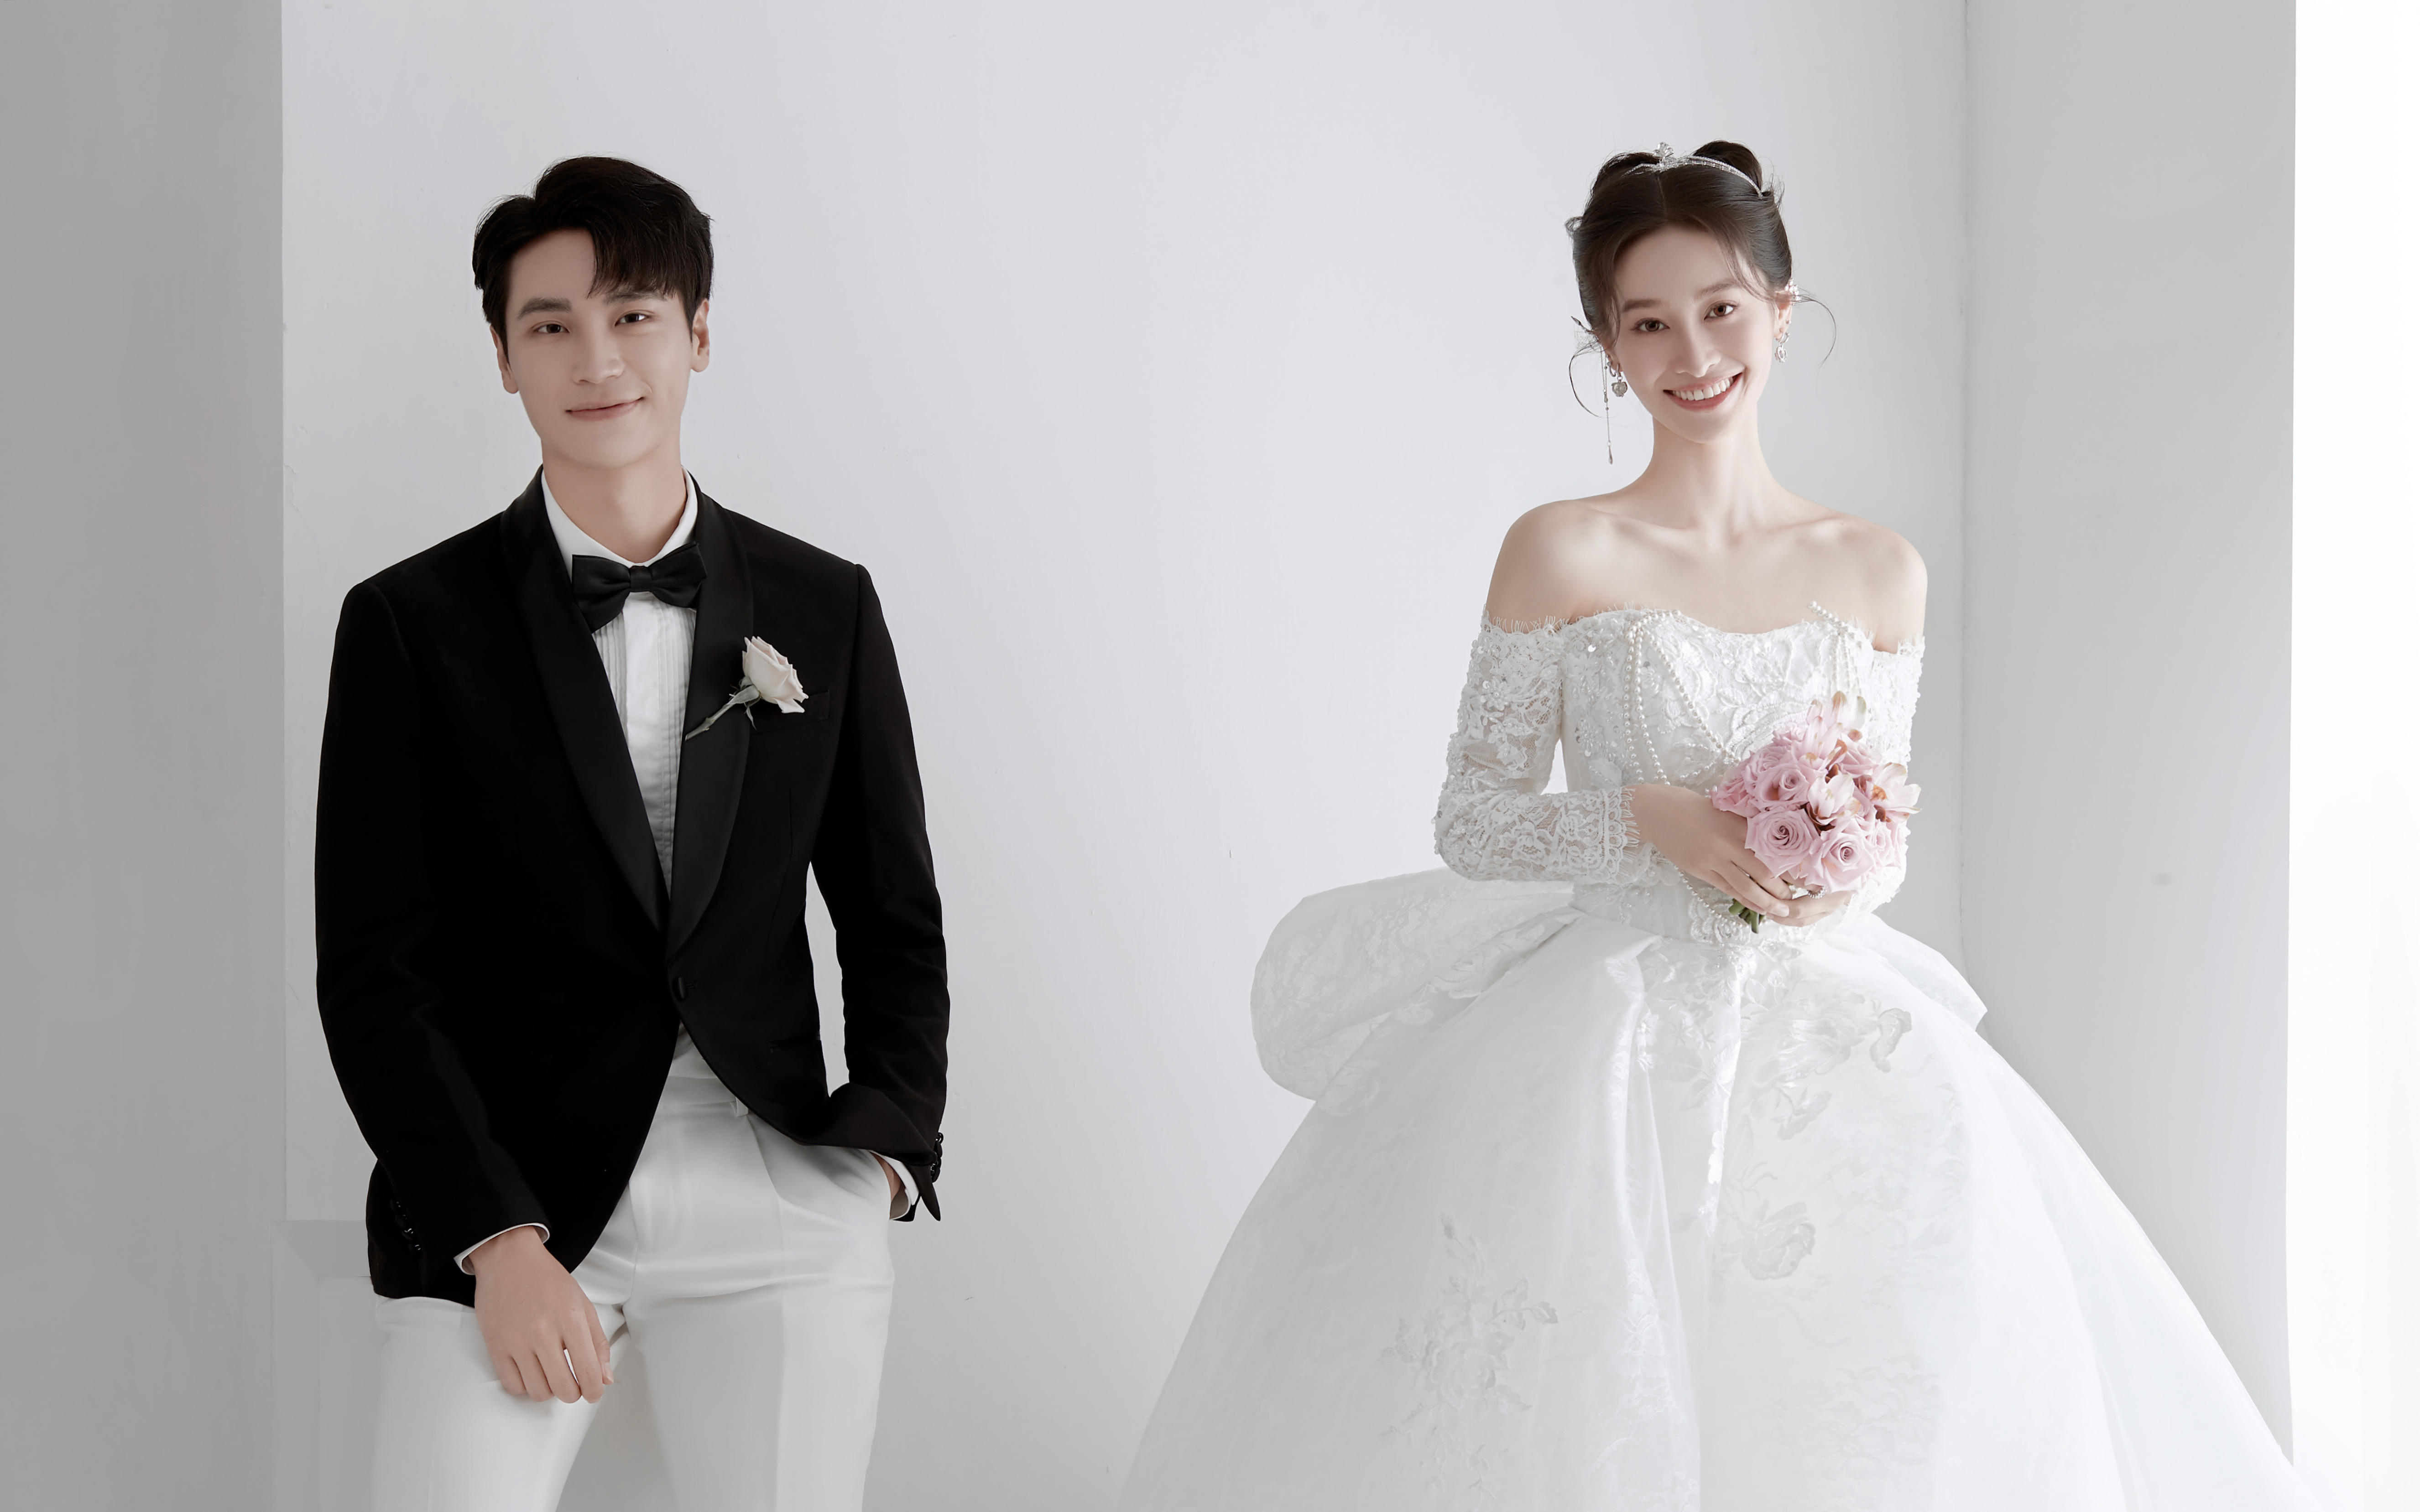 如白月光般干净清透的韩式极简婚纱照, 经典耐看.